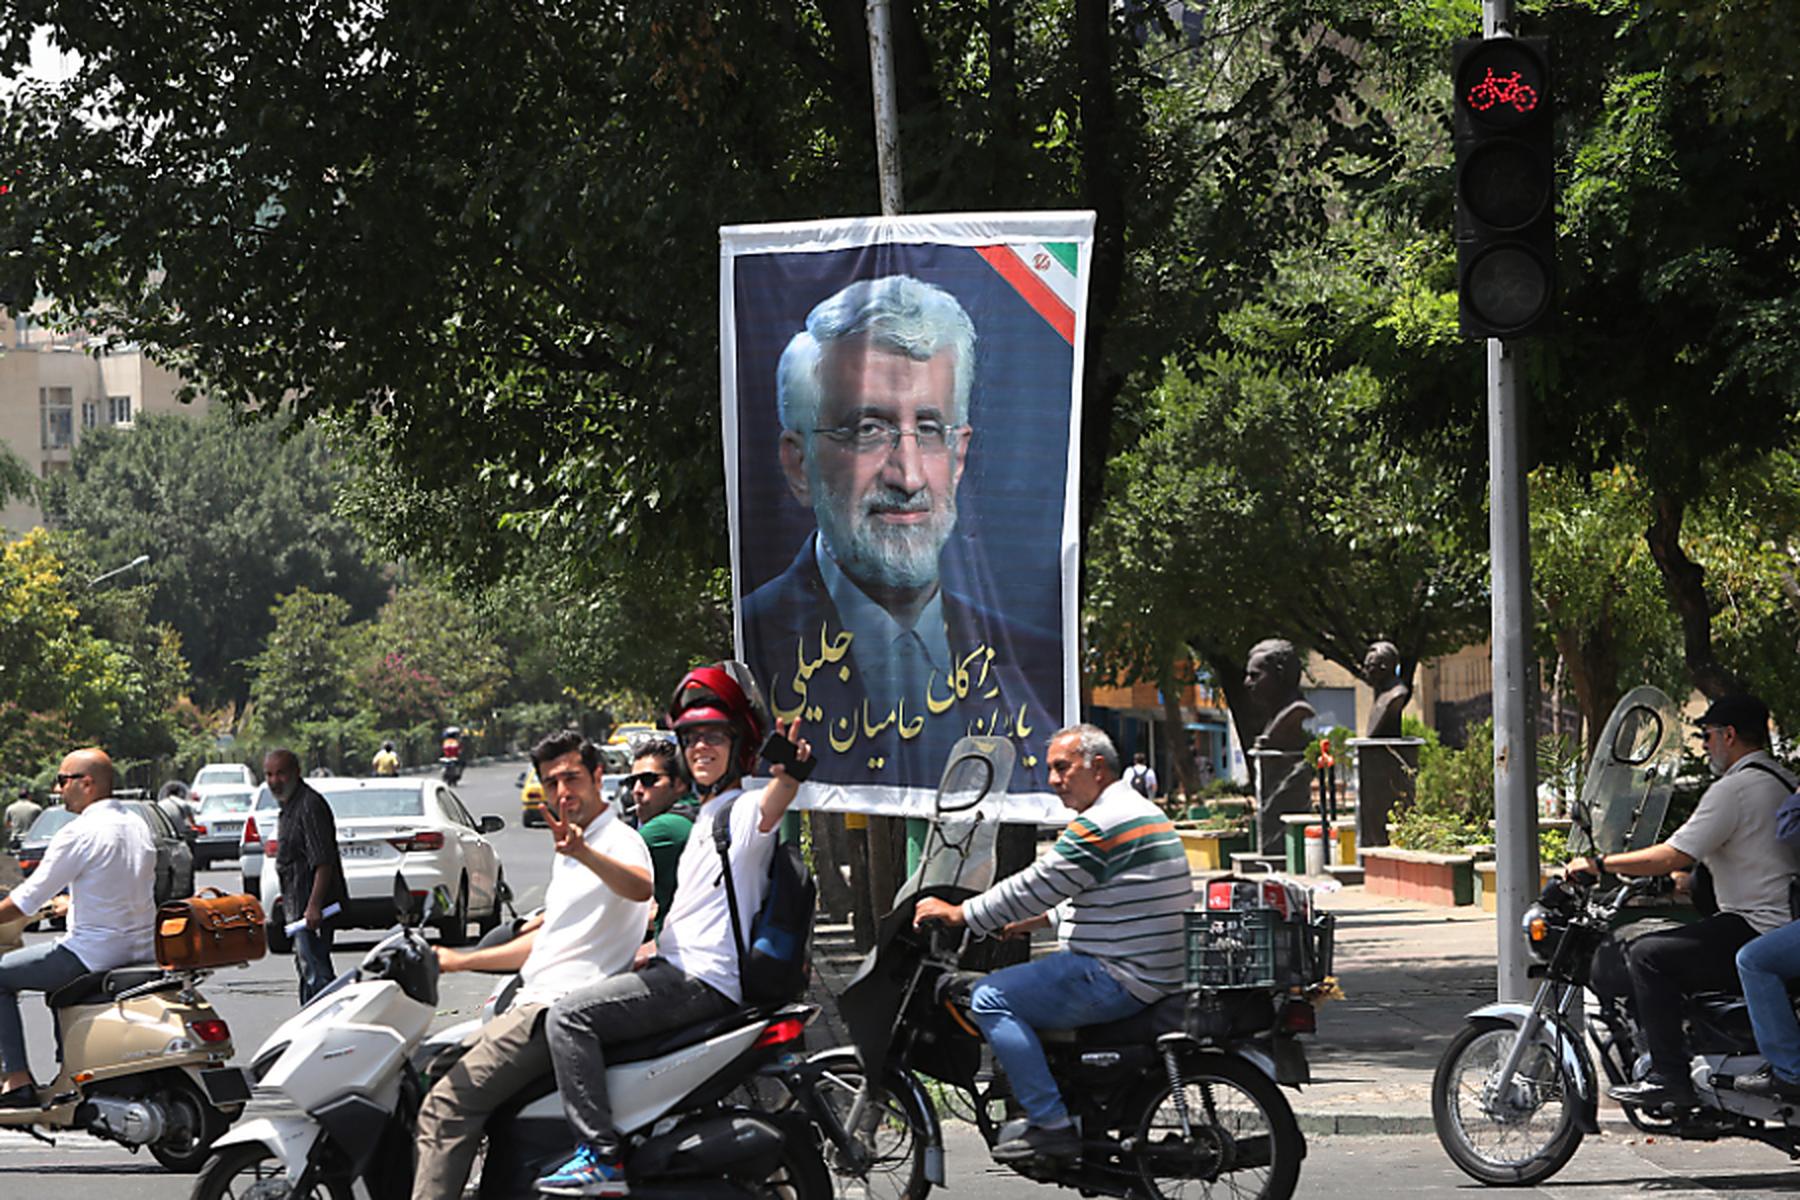 Teheran: Stichwahl um Präsidentschaft im Iran